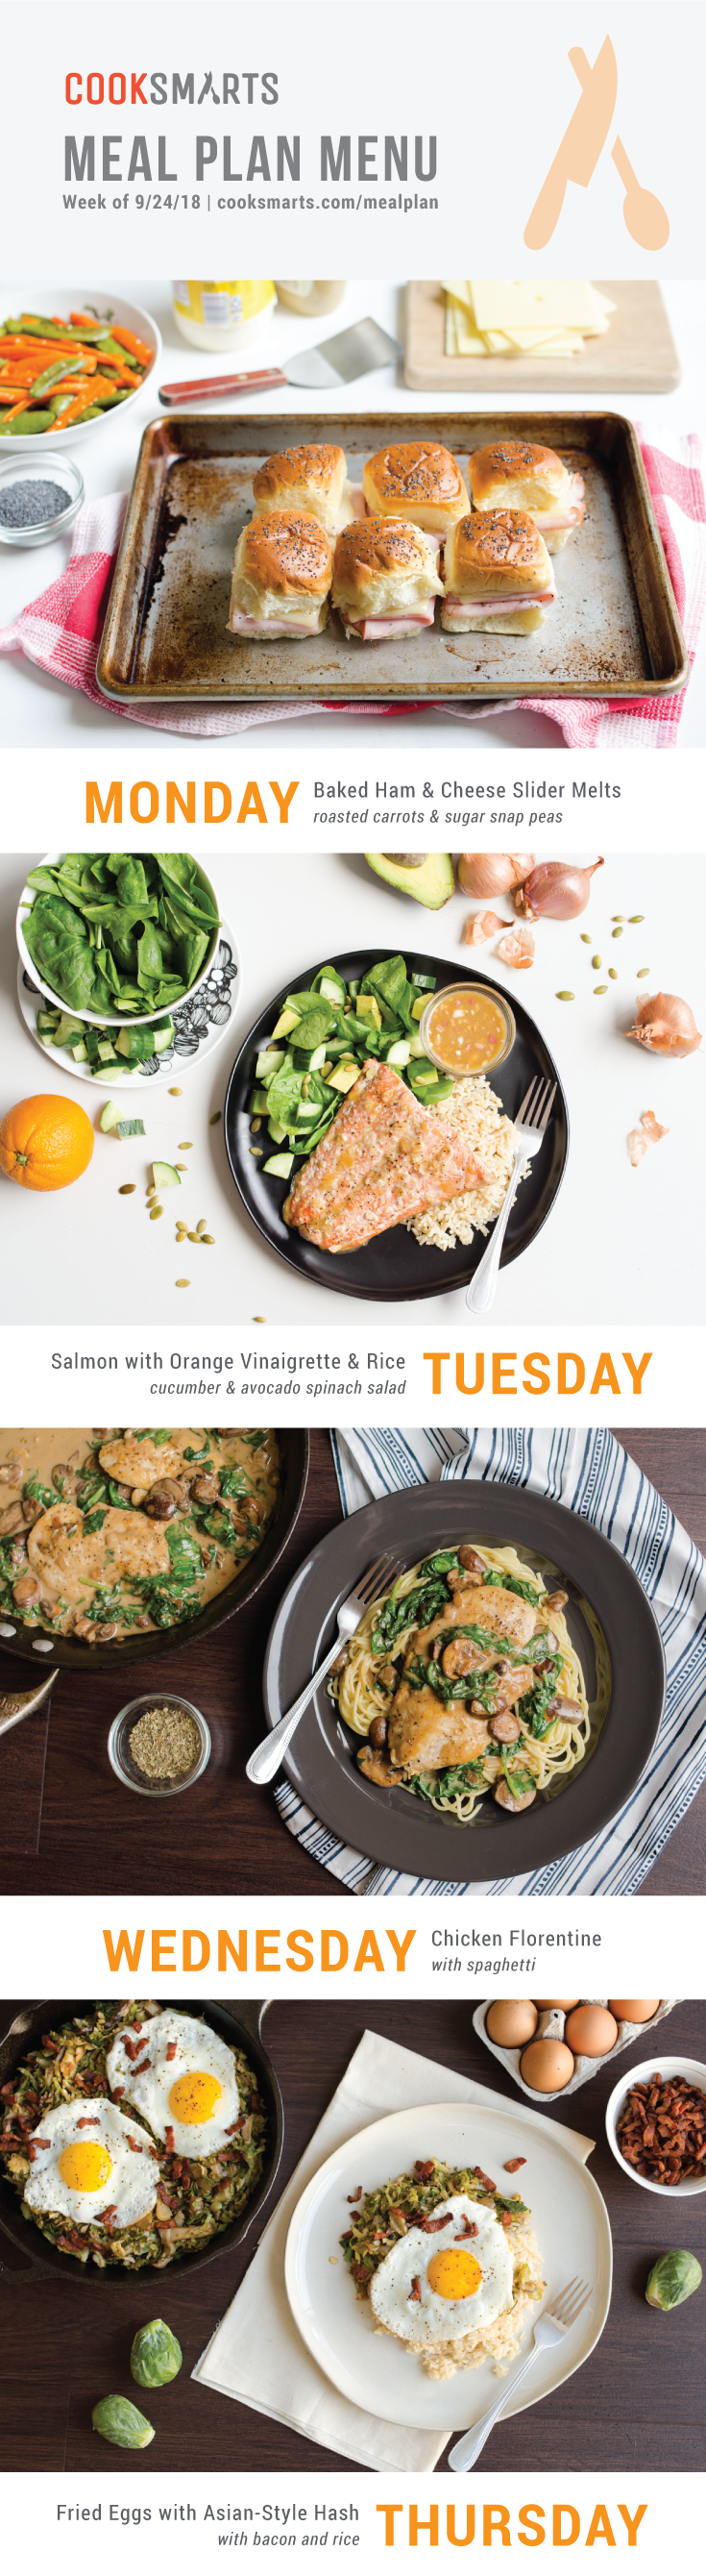 Weekly Meal Planner | Menu for Week of 9/24/18 via Cook Smarts